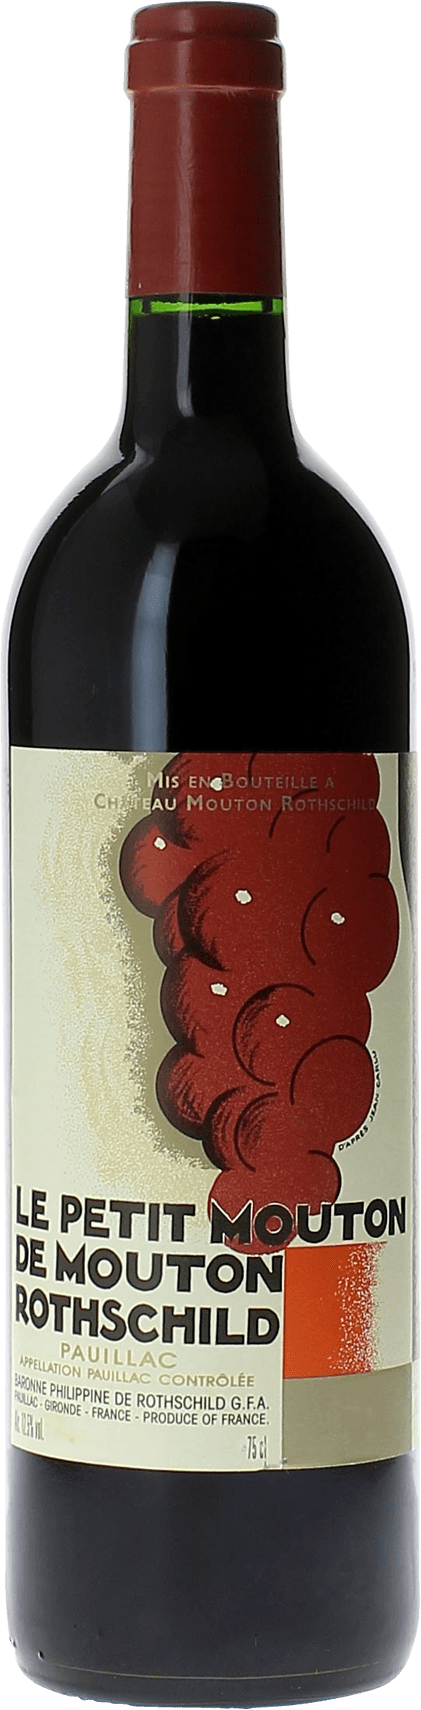 Petit mouton 1996 2nd vin de Mouton Rothschild Pauillac, Bordeaux rouge